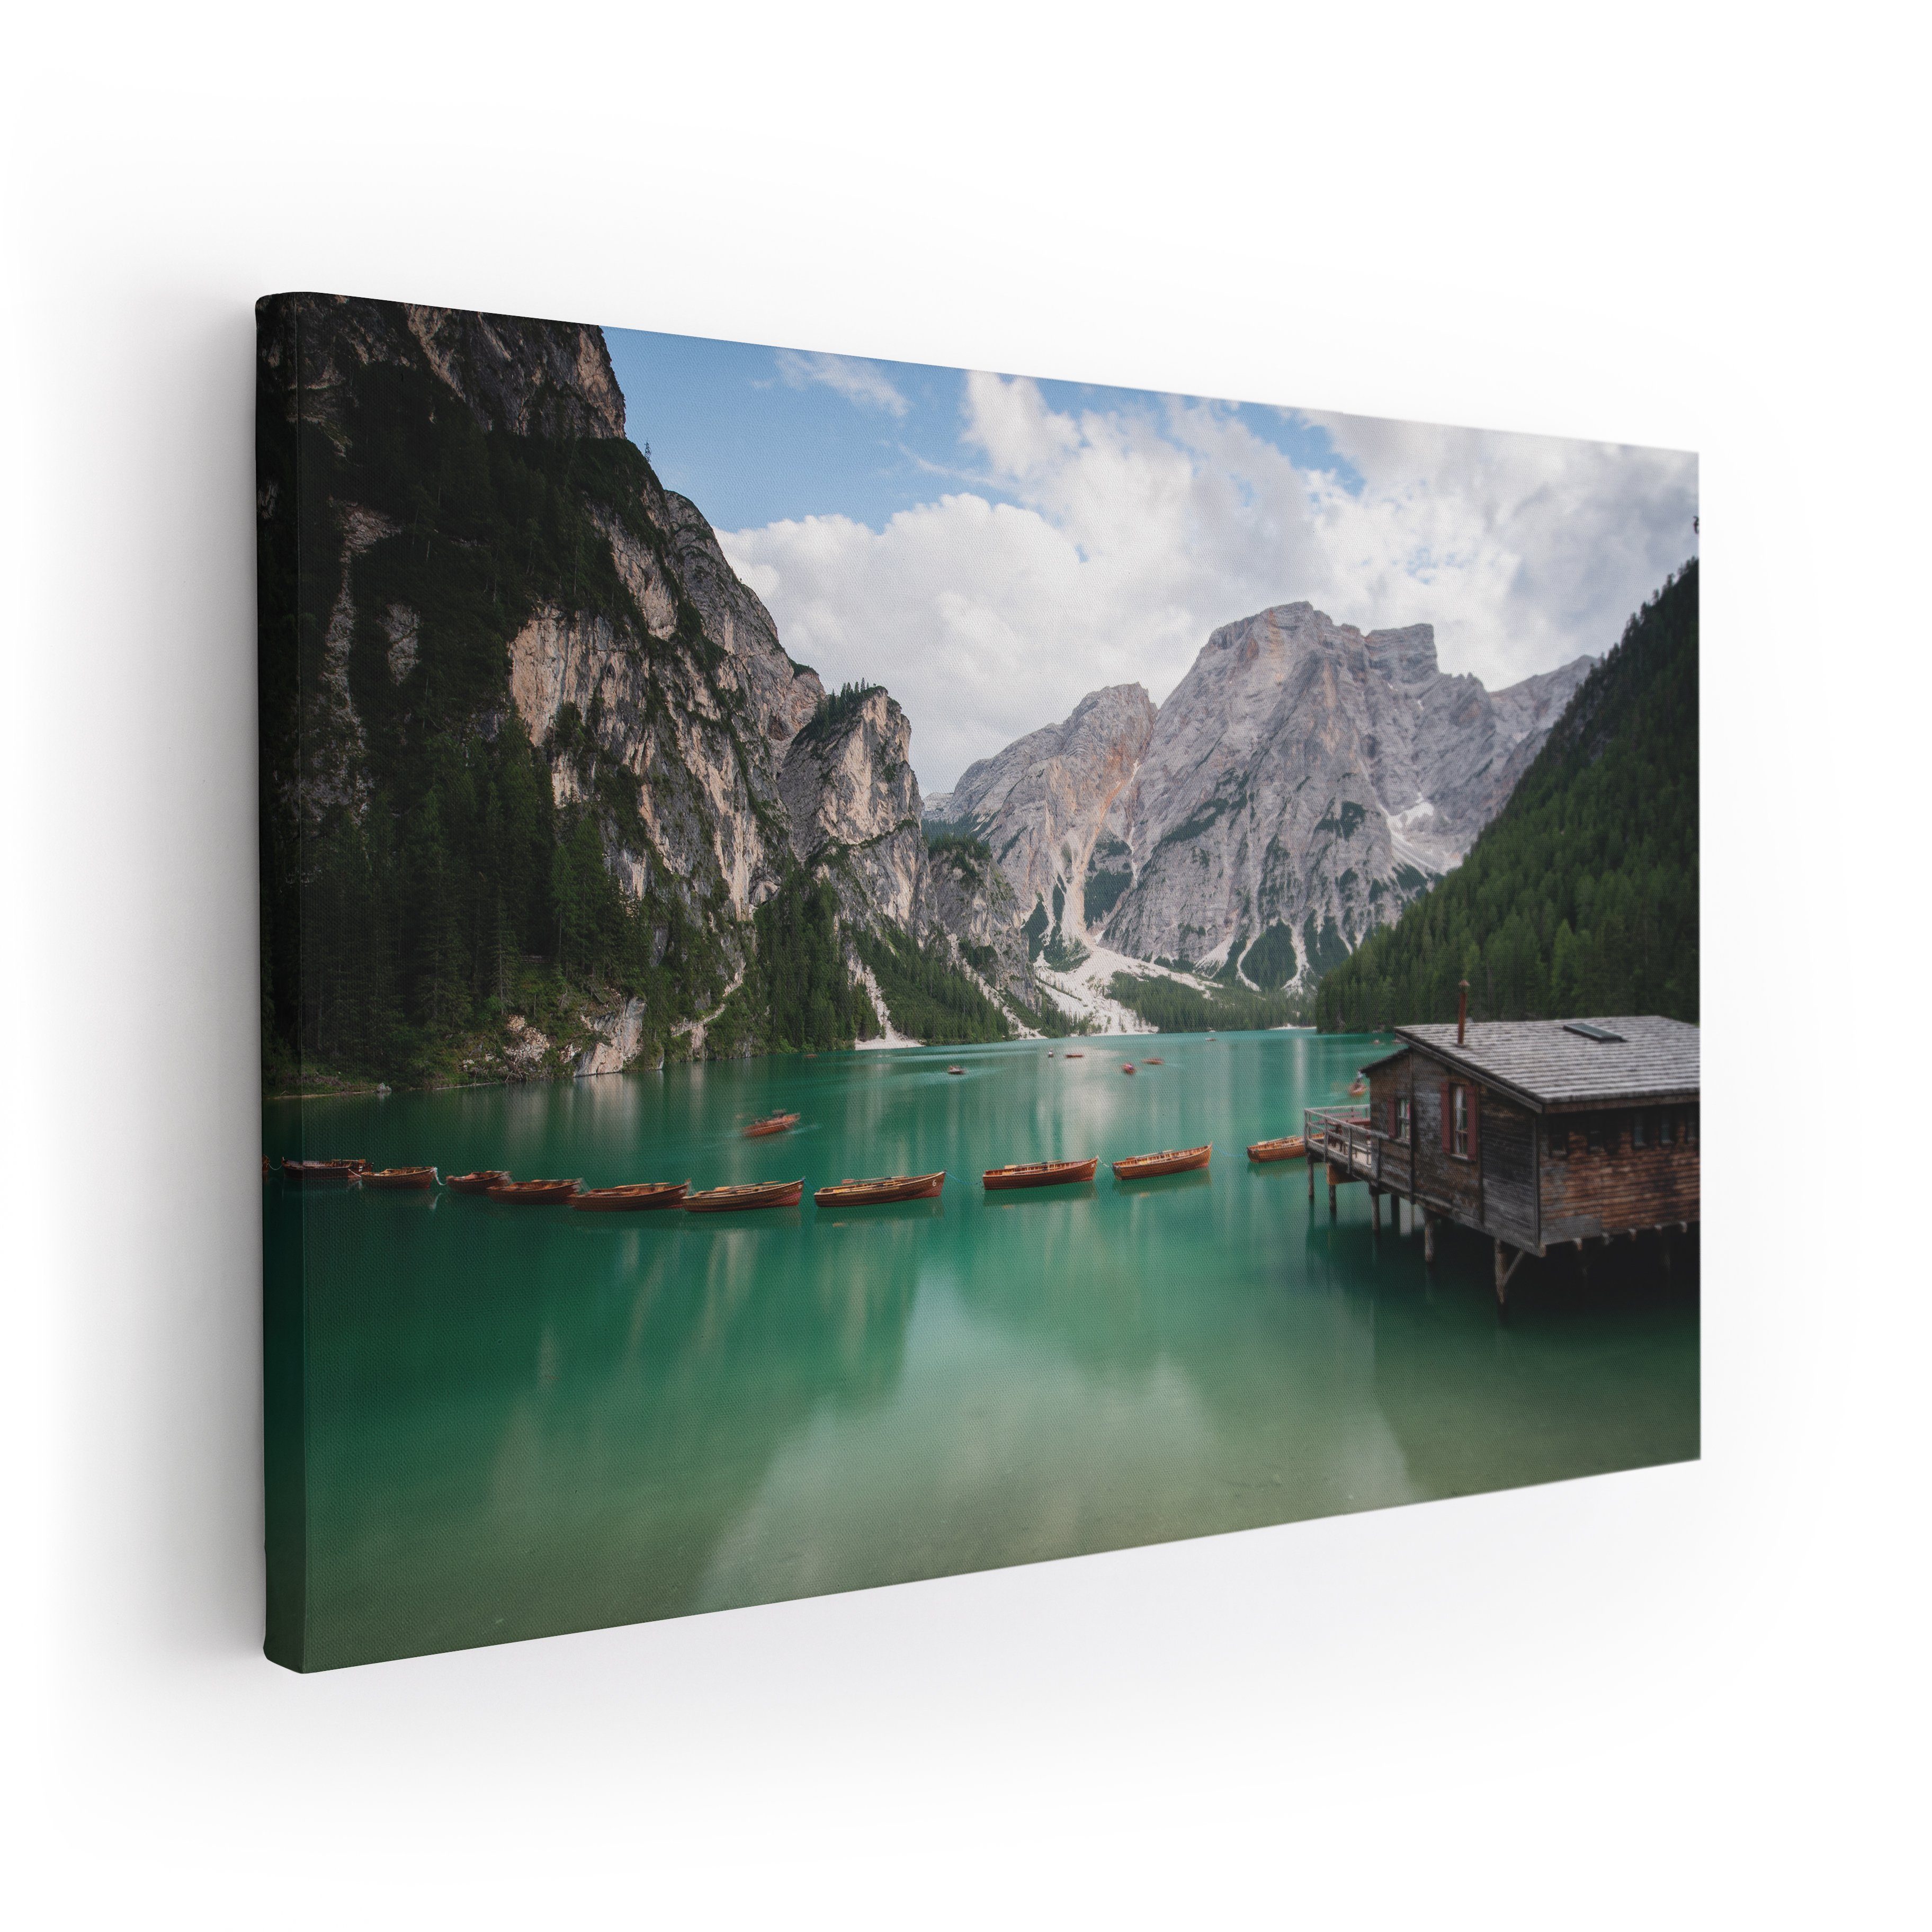 Leinwand-Bilder Wandbild Druck auf Canvas Kunstdruck Sommer Alpen 